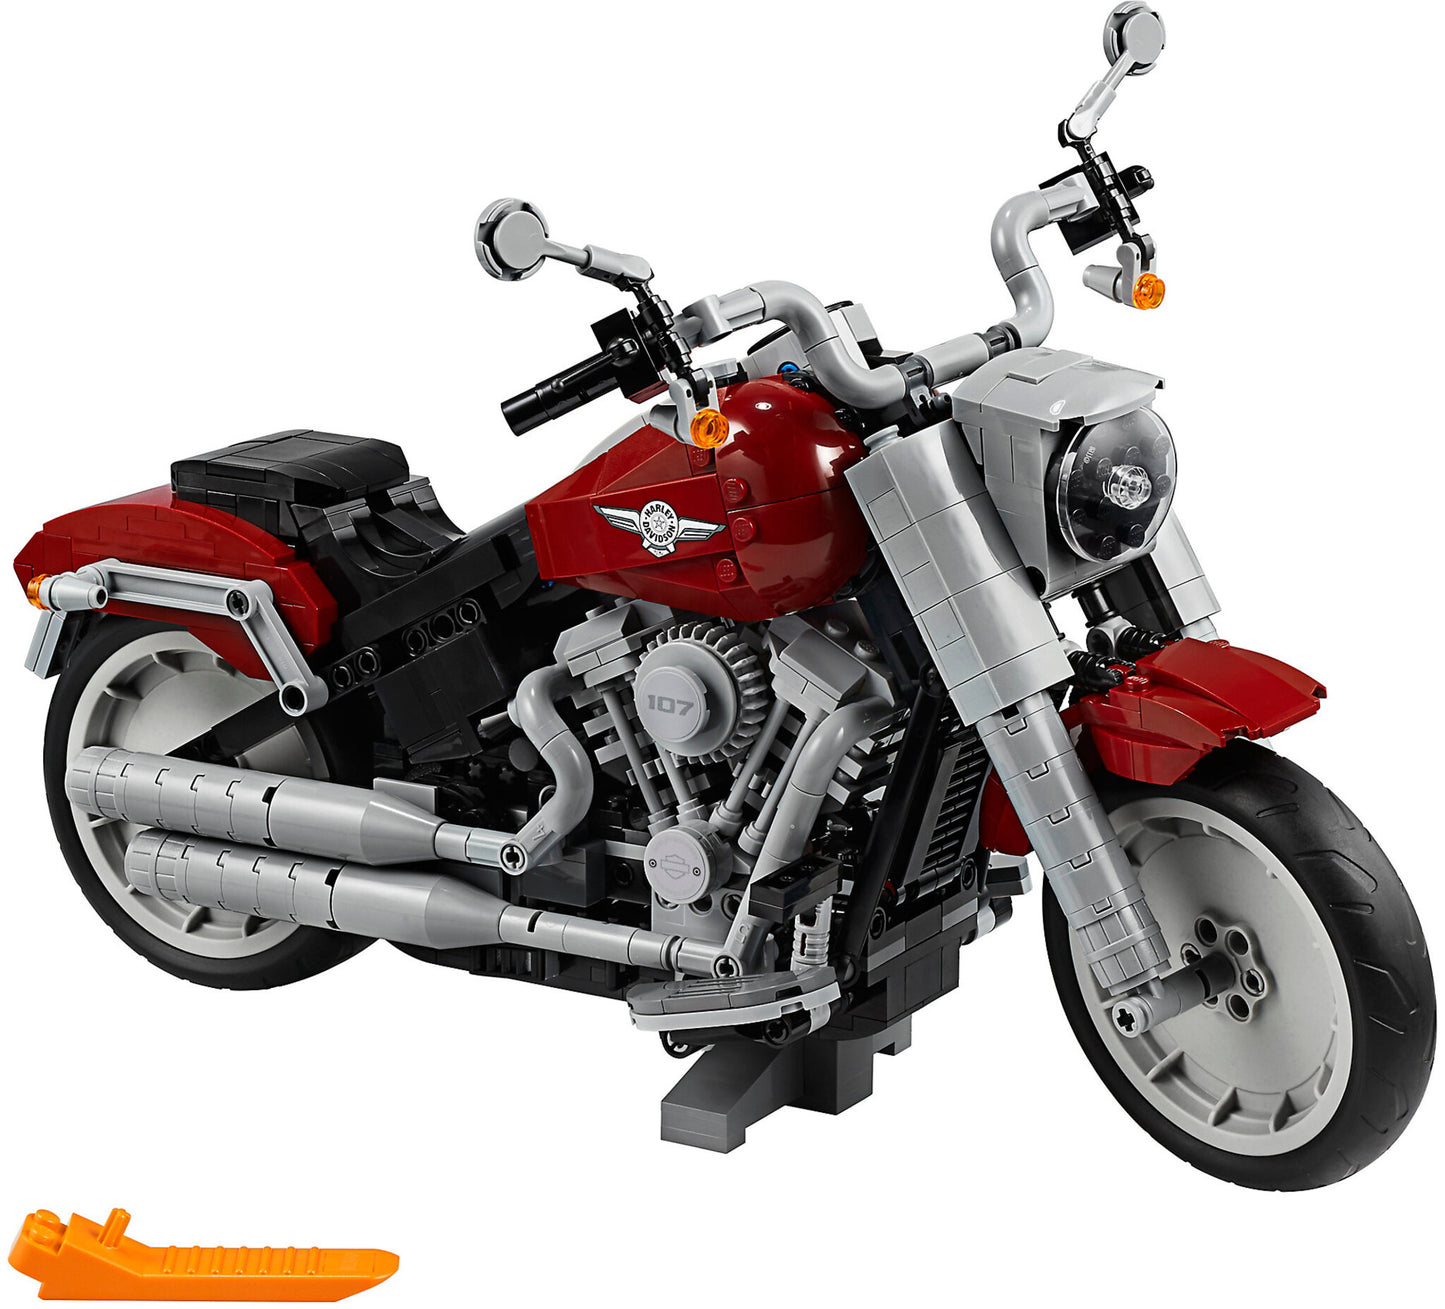 10269 LEGO Creator - Harley Davidson® Fat Boy®